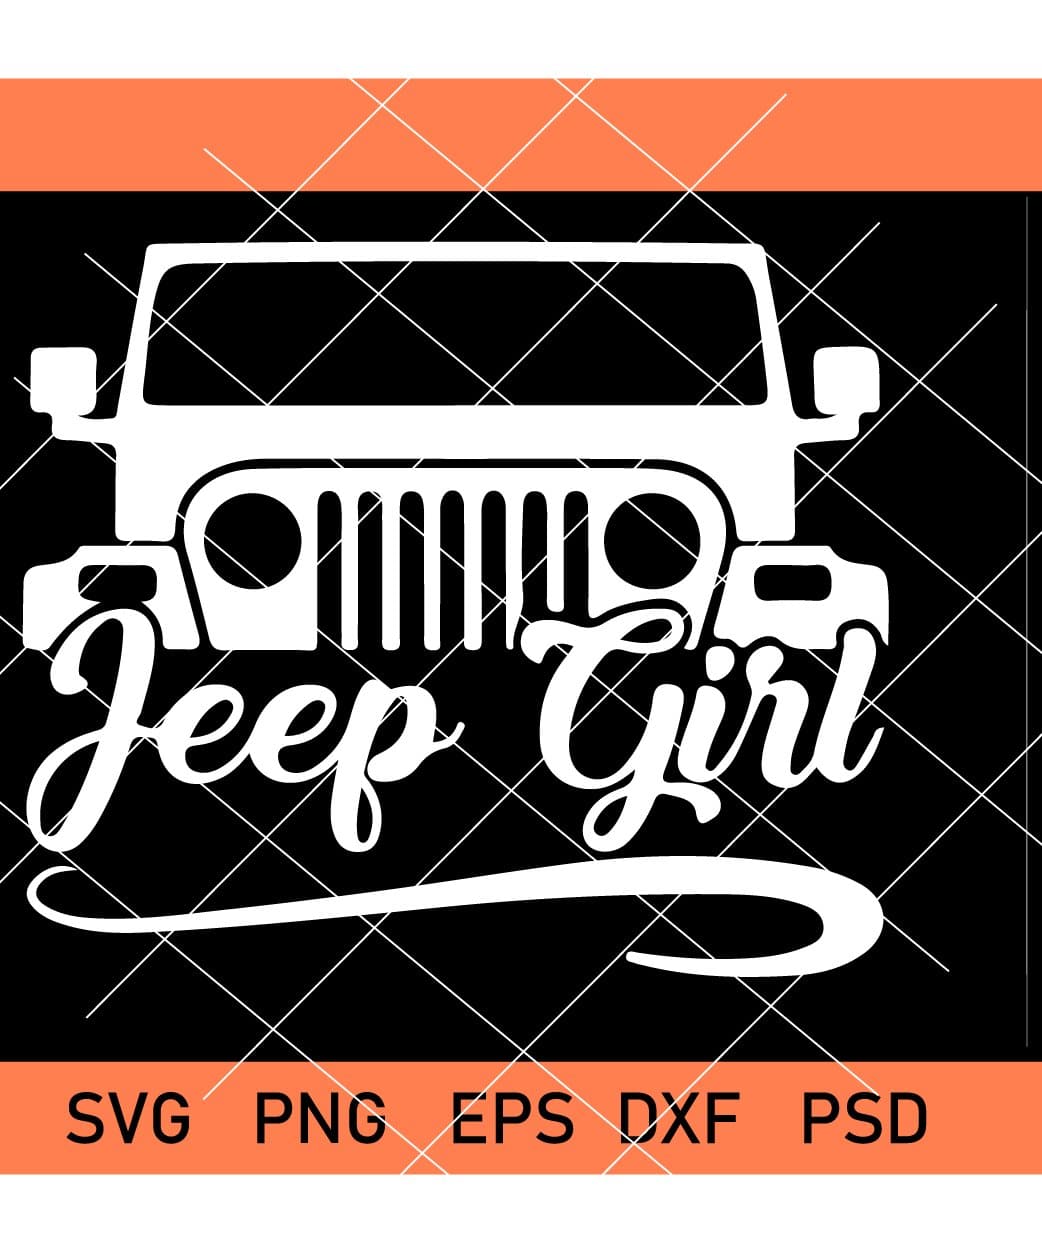 Jeep Girl Sayings Svg